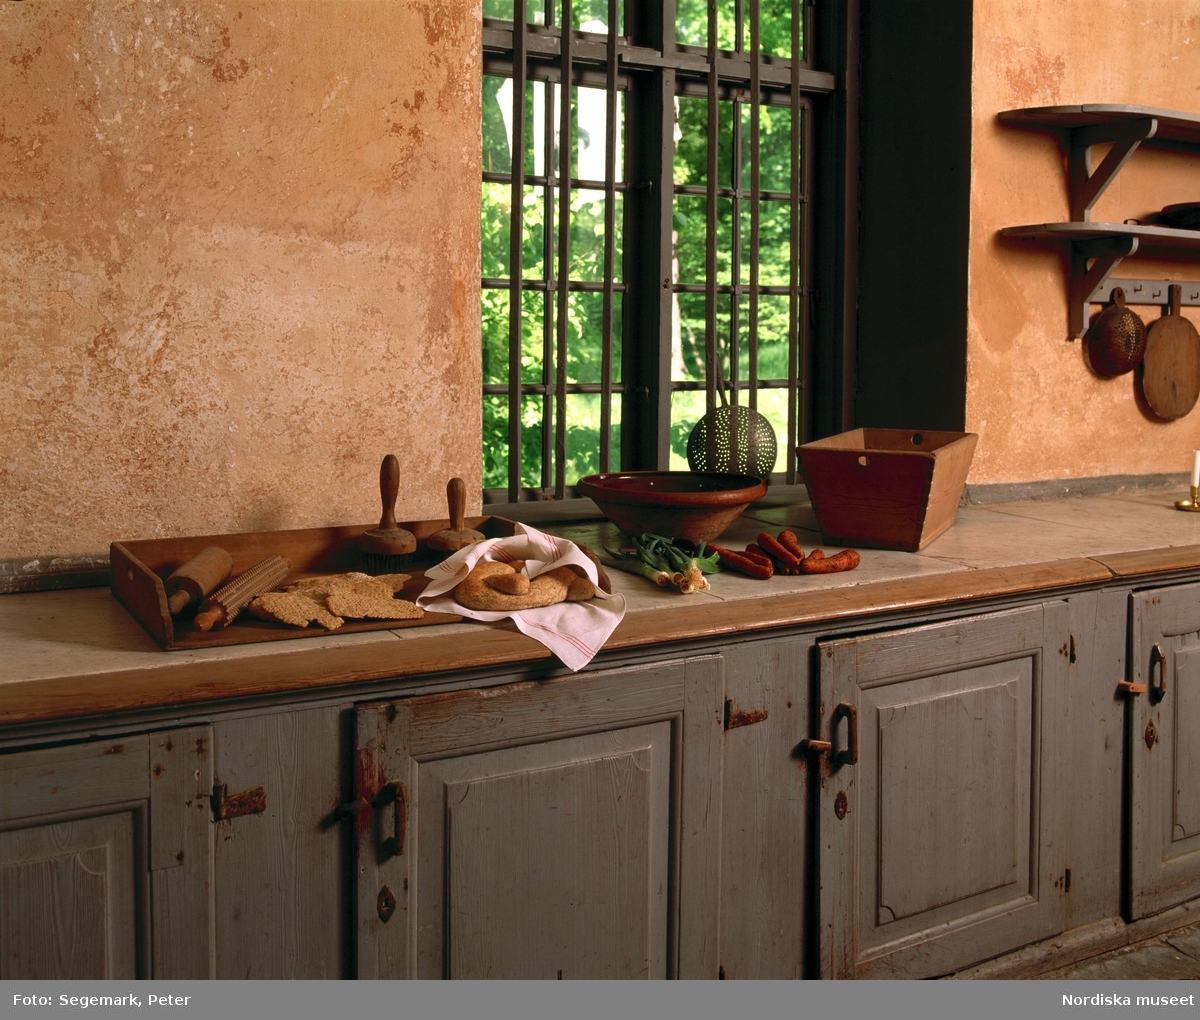 Svindersvik. Bänk med marmorskiva i köket där bröd och grönsaker samt skålar och redskap för matlagning ställts fram.